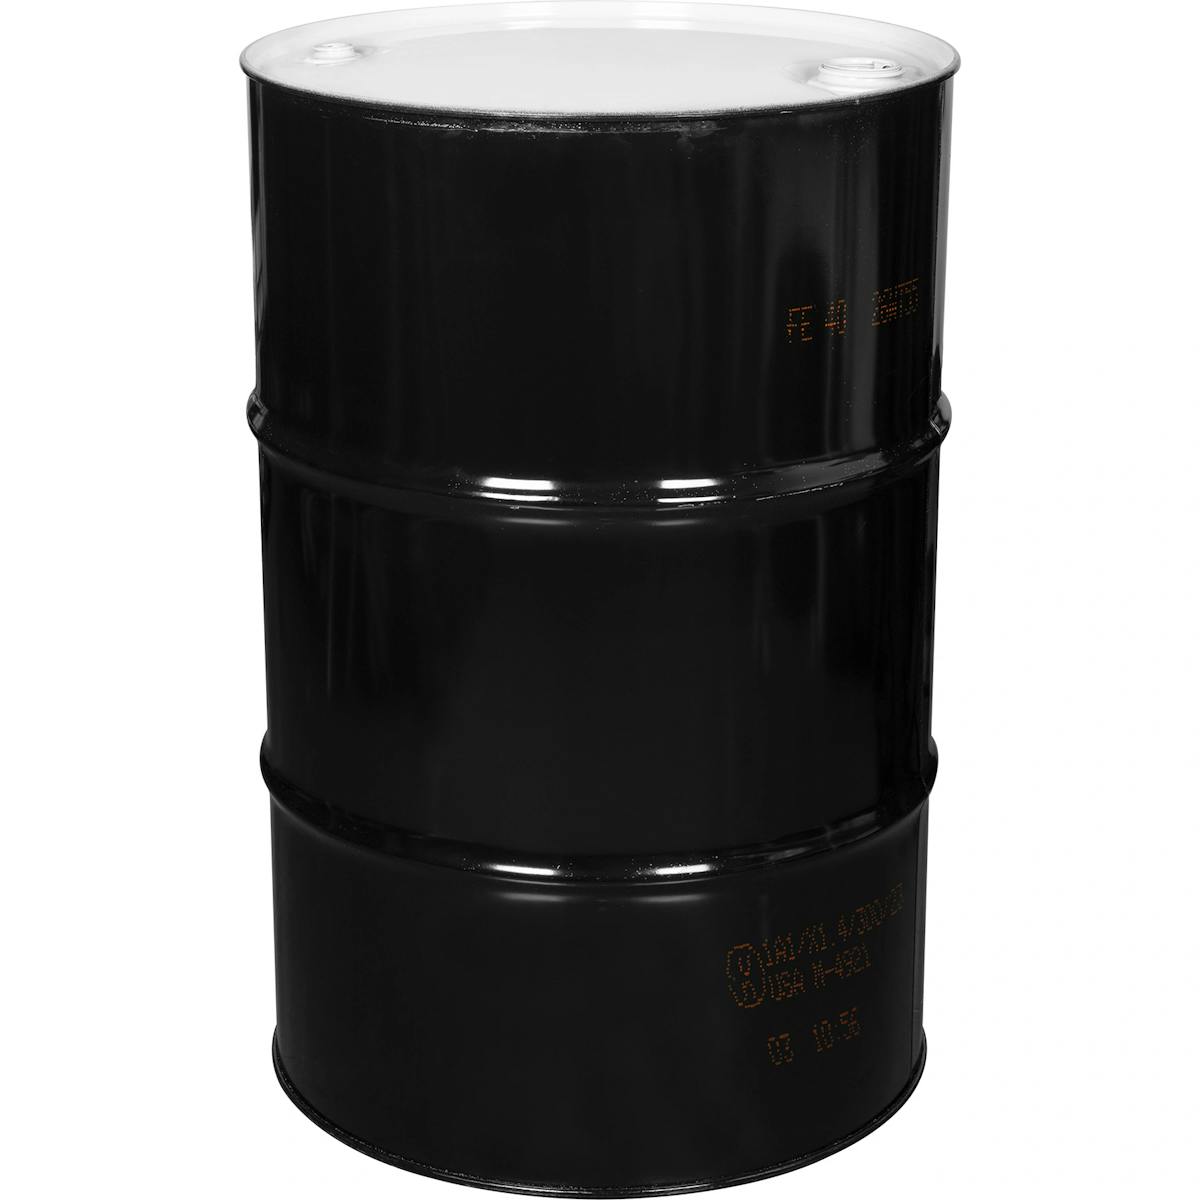 Product Image for 55 Gallon Closed Top Metal Barrel sku:met-102